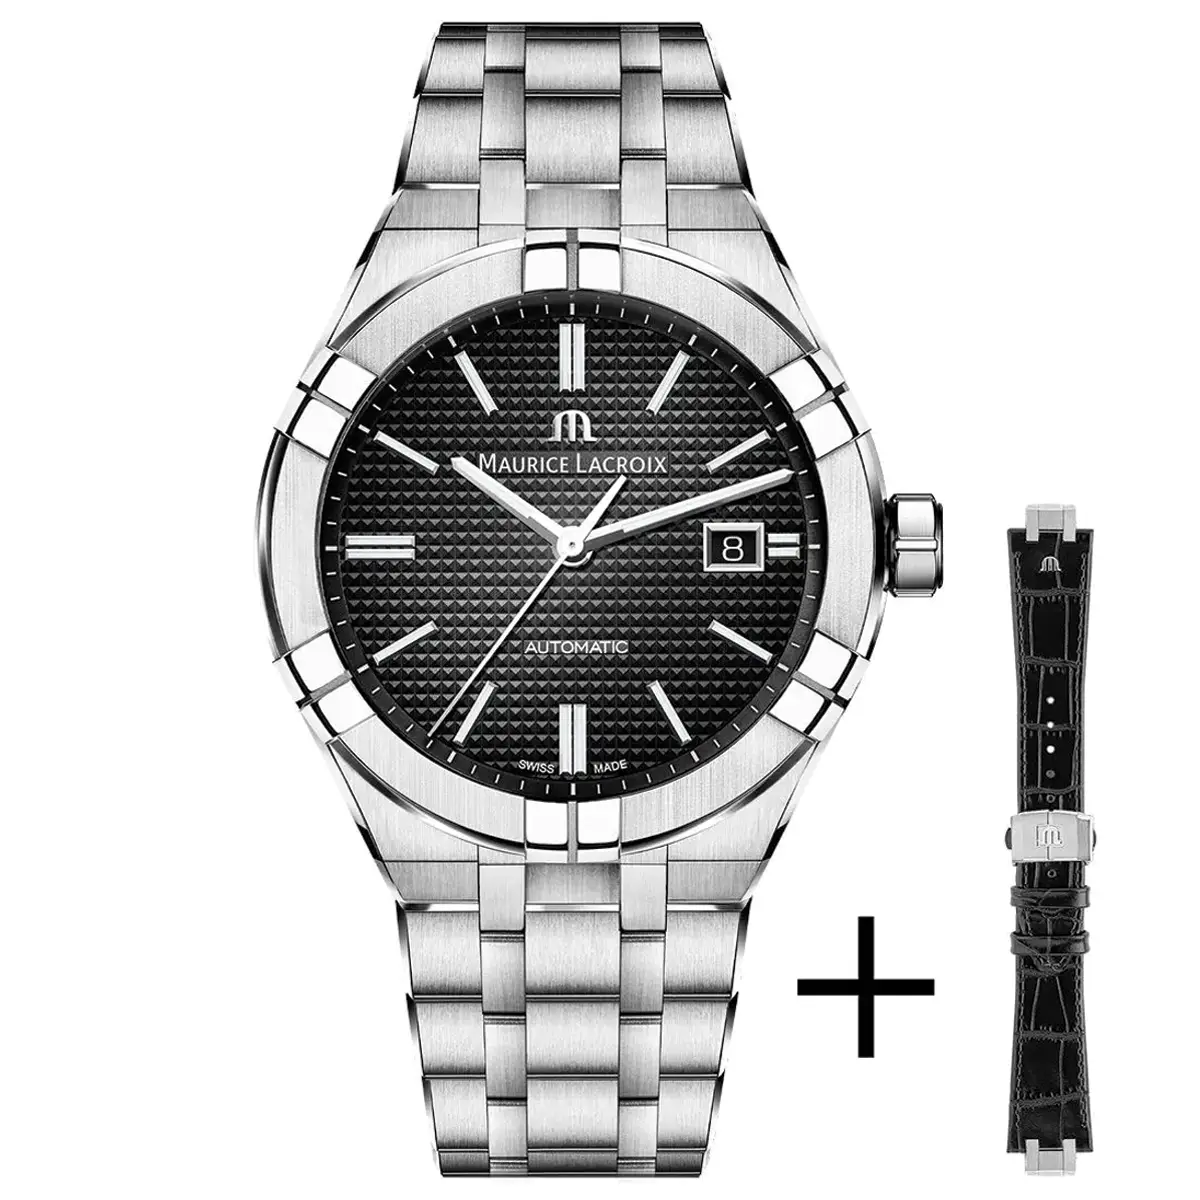 Đồng hồ Maurice Lacroix Aikon Automatic AI6008-SS002-330-2 mặt số màu đen. Dây đeo bằng thép. Thân vỏ bằng thép.